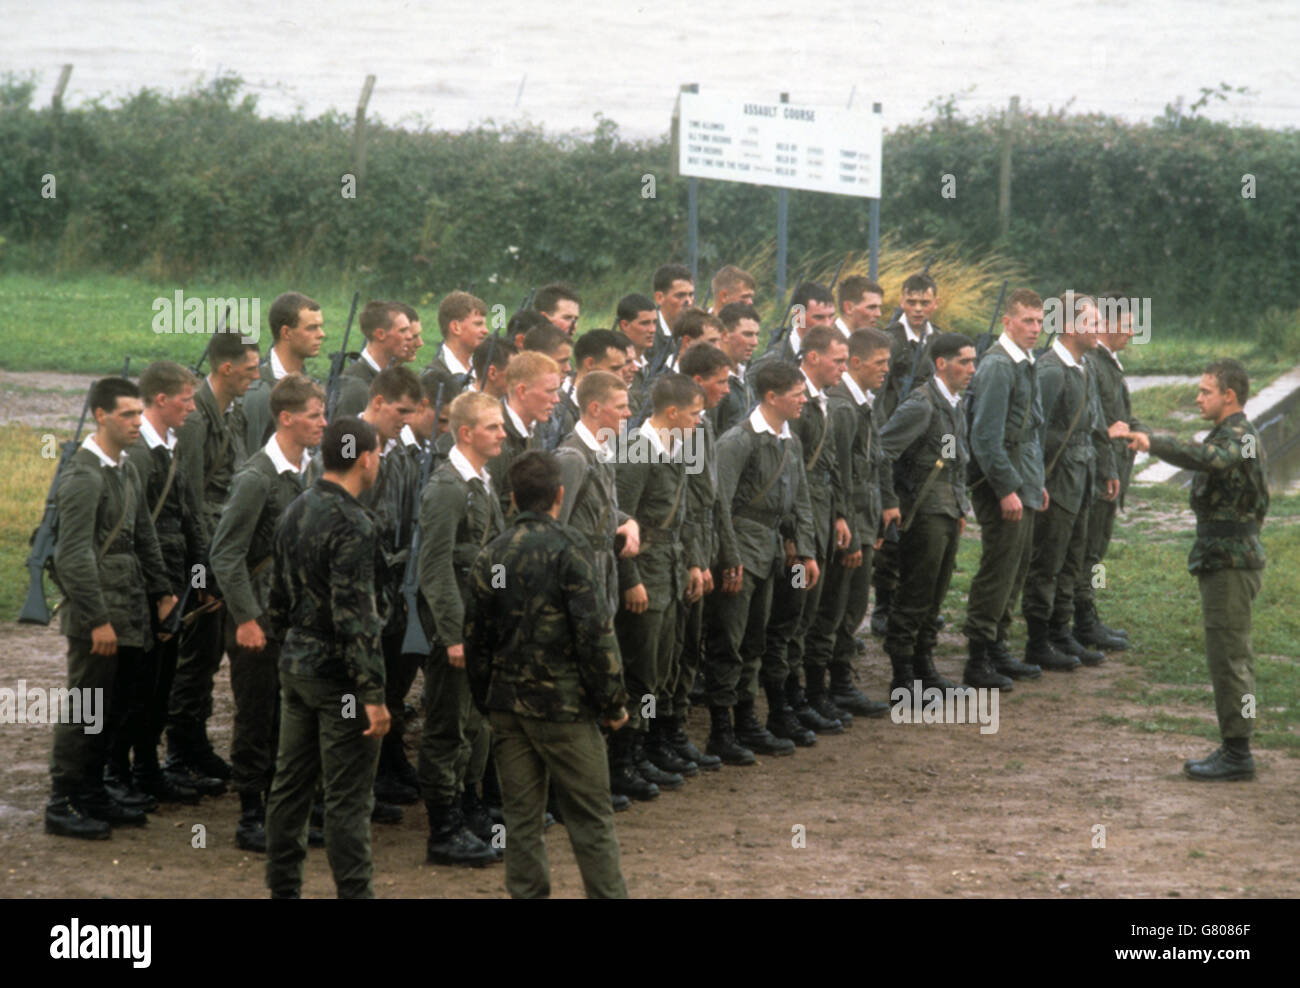 Un jeune officier recrute des parades au Royal Marine Commando Training Centre de Lympstone, Devon. Le Prince Edward, âgé de 22 ans, commencera bientôt une formation physique et mentale à temps plein à titre d'officier de la Marine royale le mois prochain. Banque D'Images